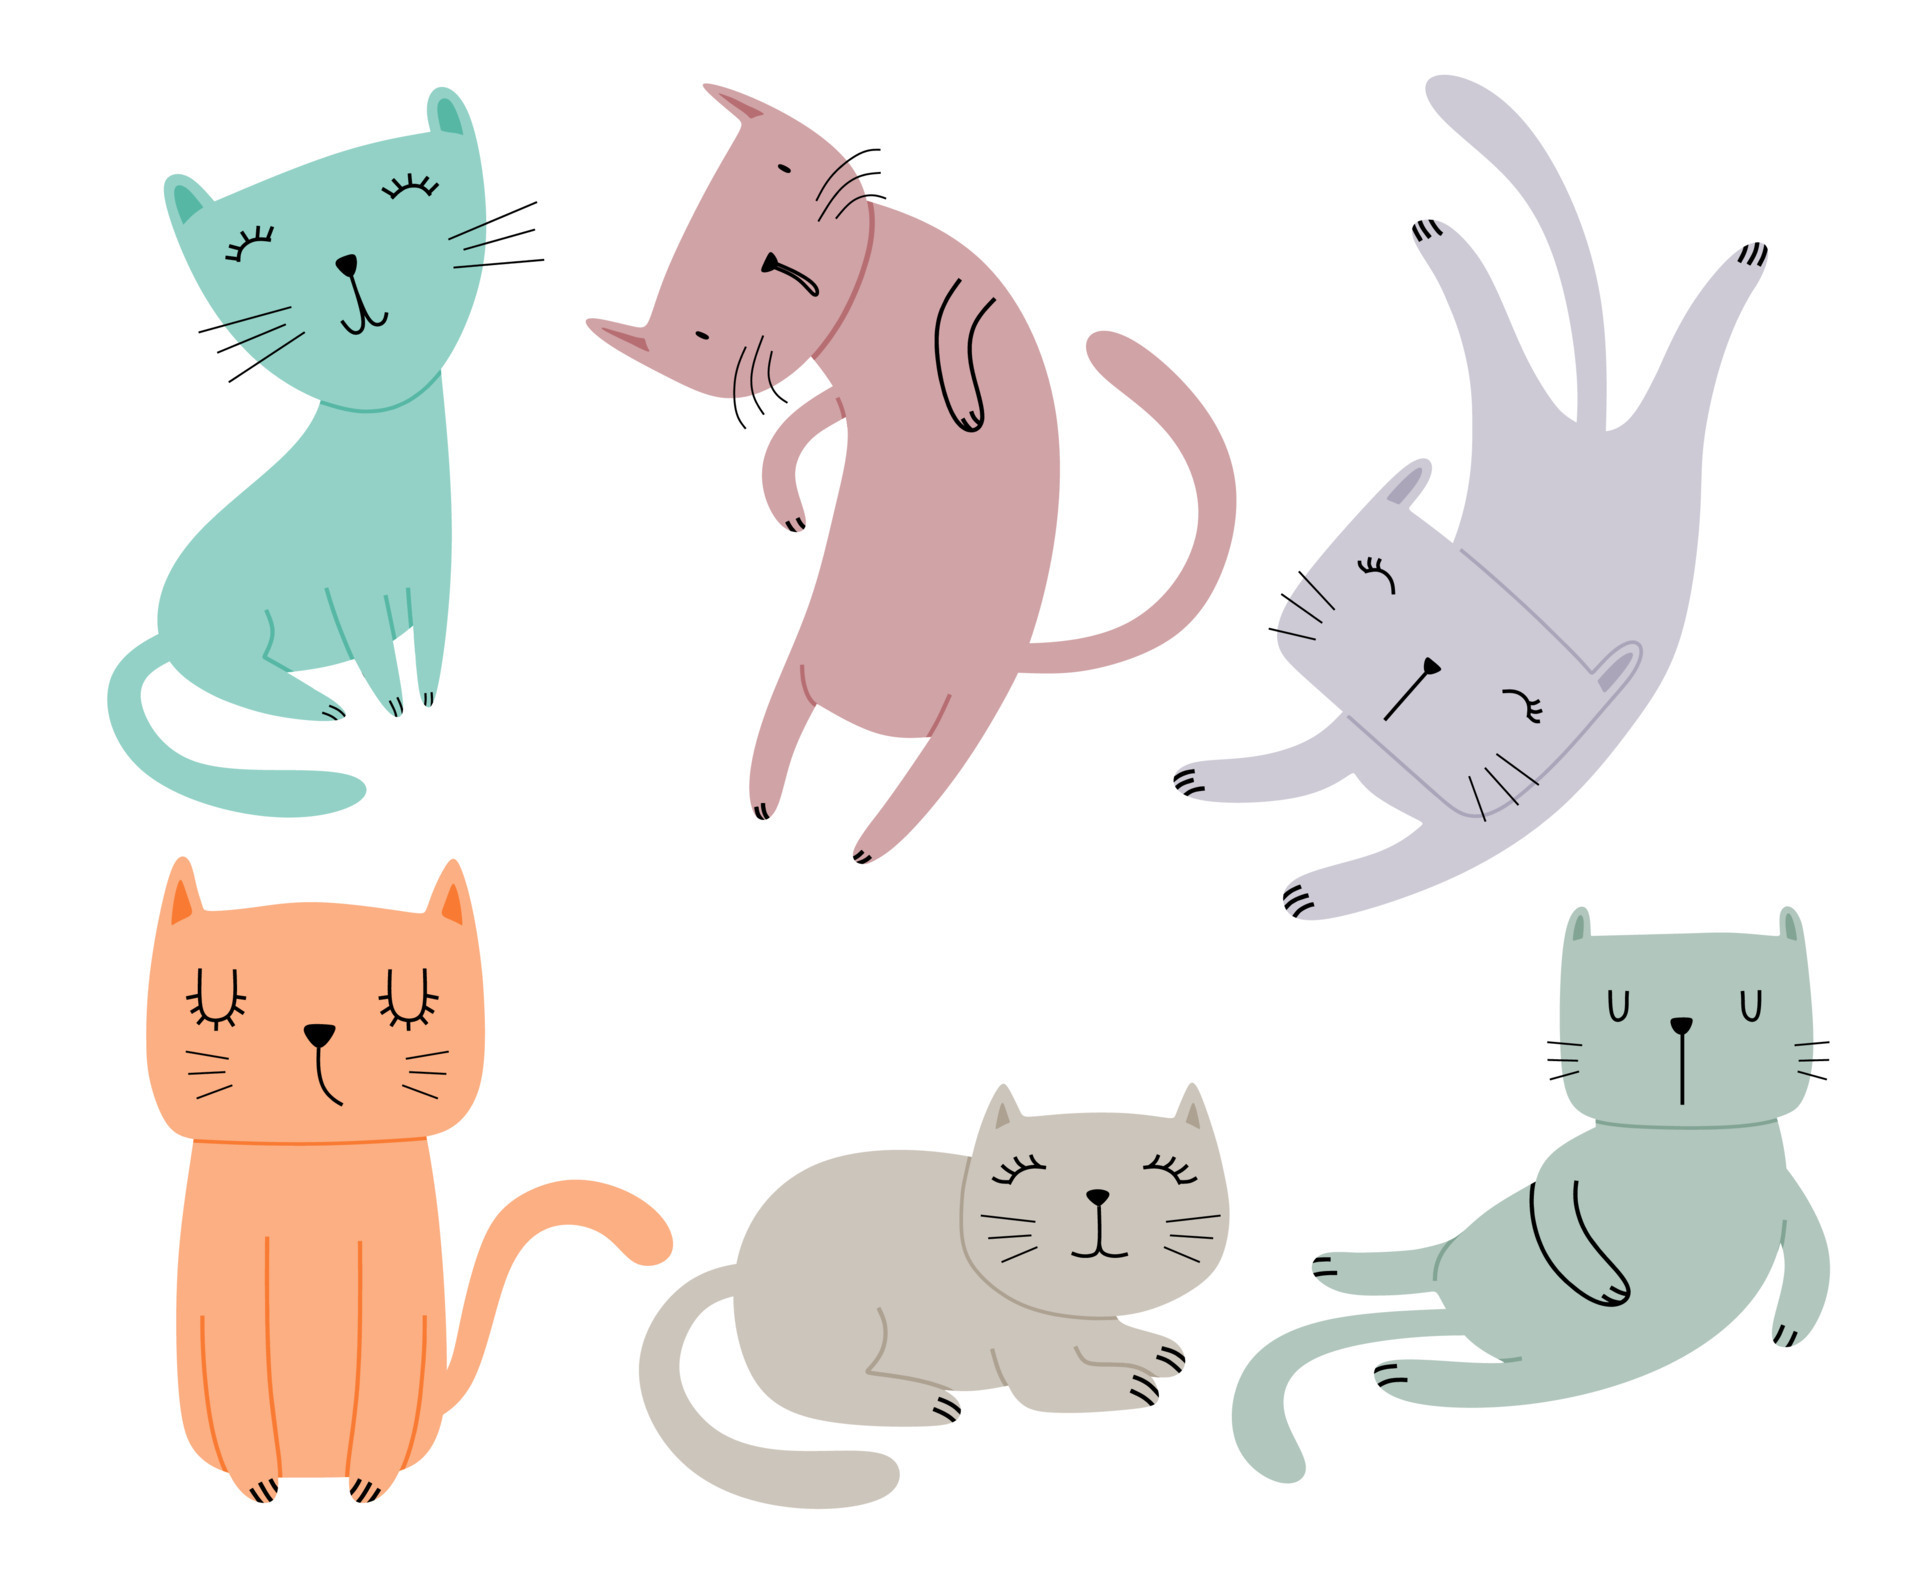 vários gatos definidos. ilustração em vetor gatinho gatinho bonito e  engraçado dos desenhos animados conjunto com diferentes raças de gatos.  9318487 Vetor no Vecteezy